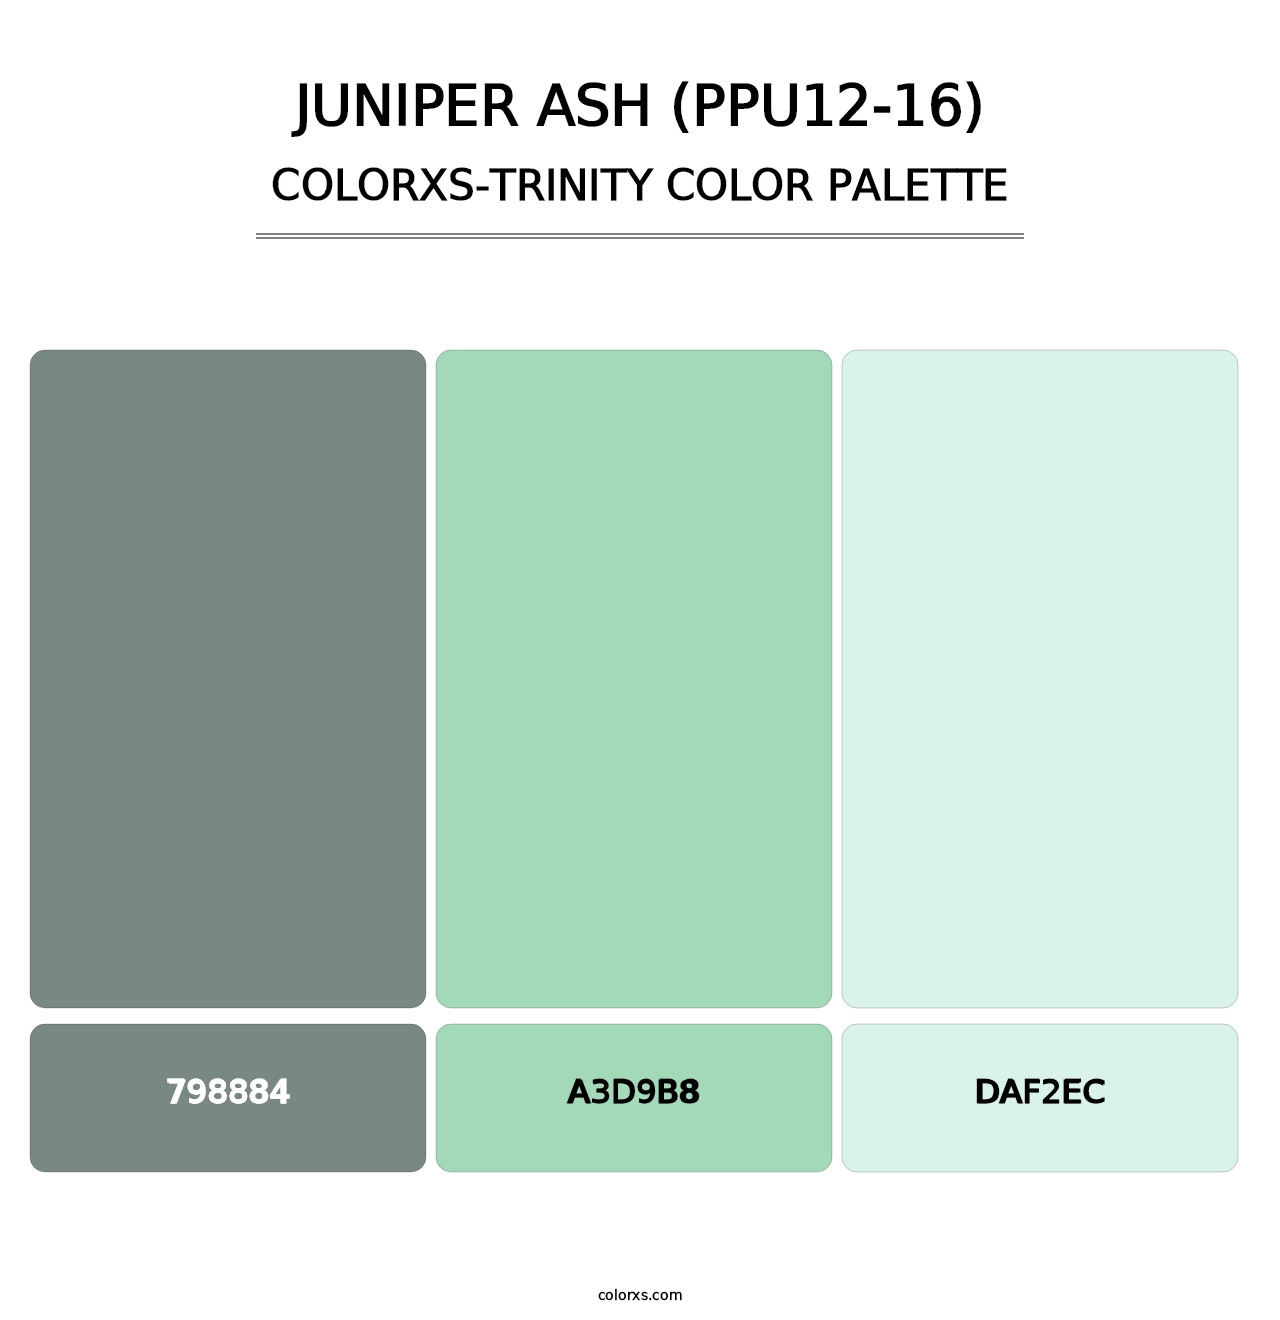 Juniper Ash (PPU12-16) - Colorxs Trinity Palette